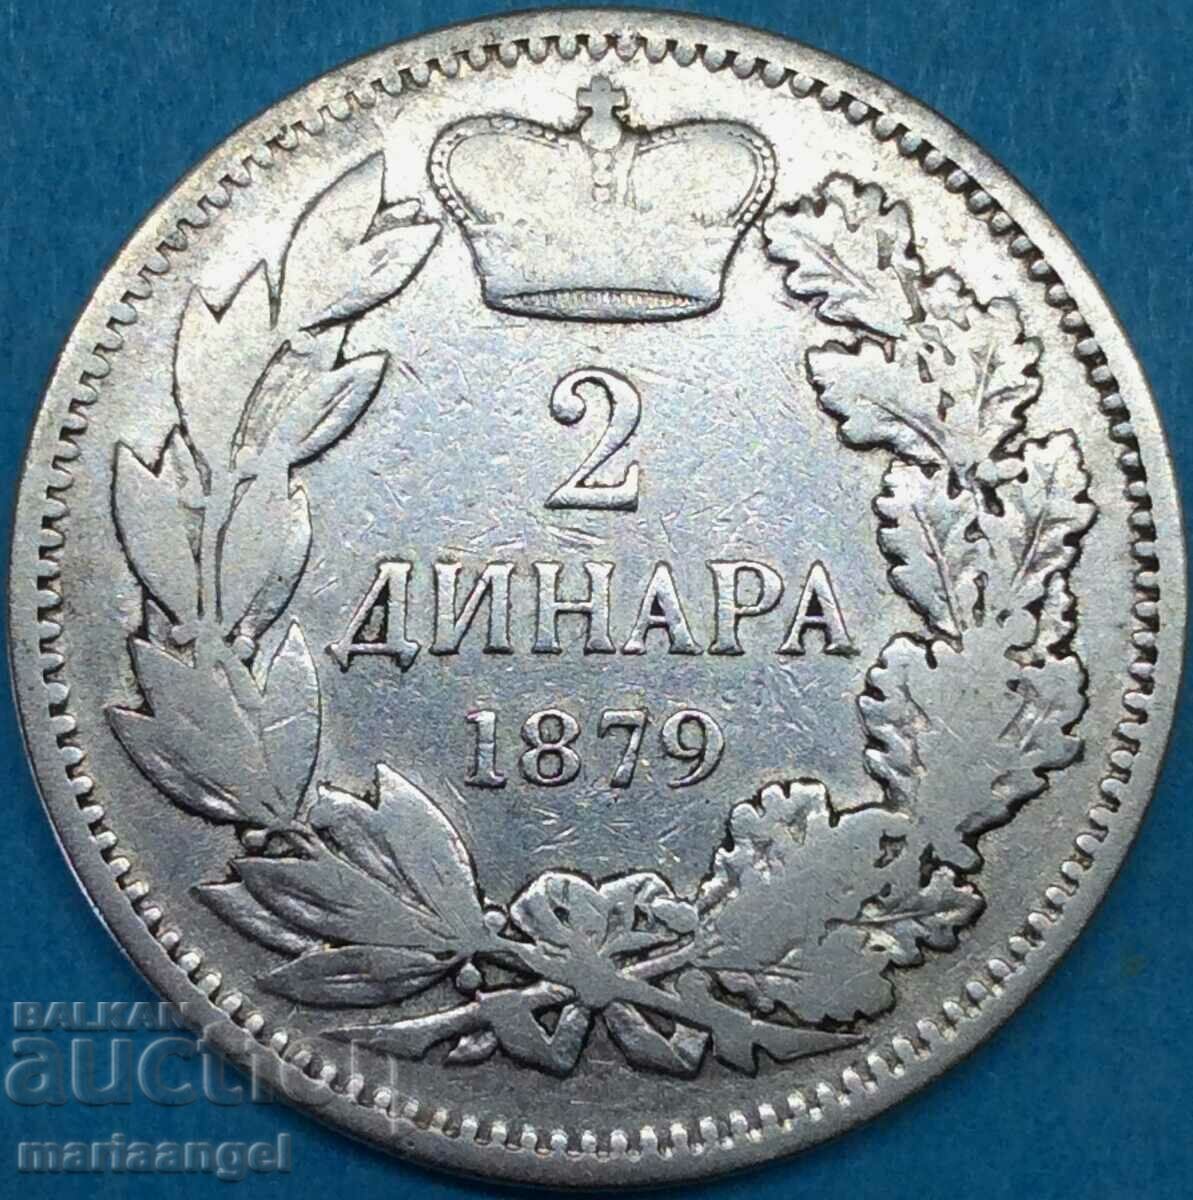 2 δηνάρια 1879 Σερβία Milan Obrenovic IV (1868-1889) ασήμι